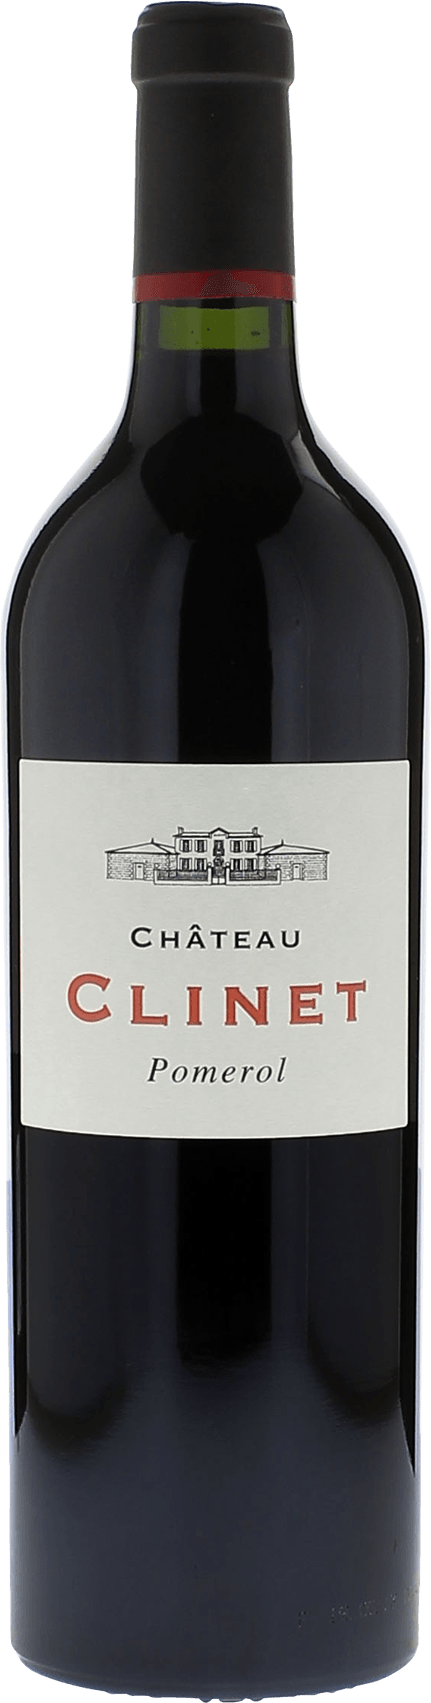 Clinet 2009  Pomerol, Bordeaux rouge